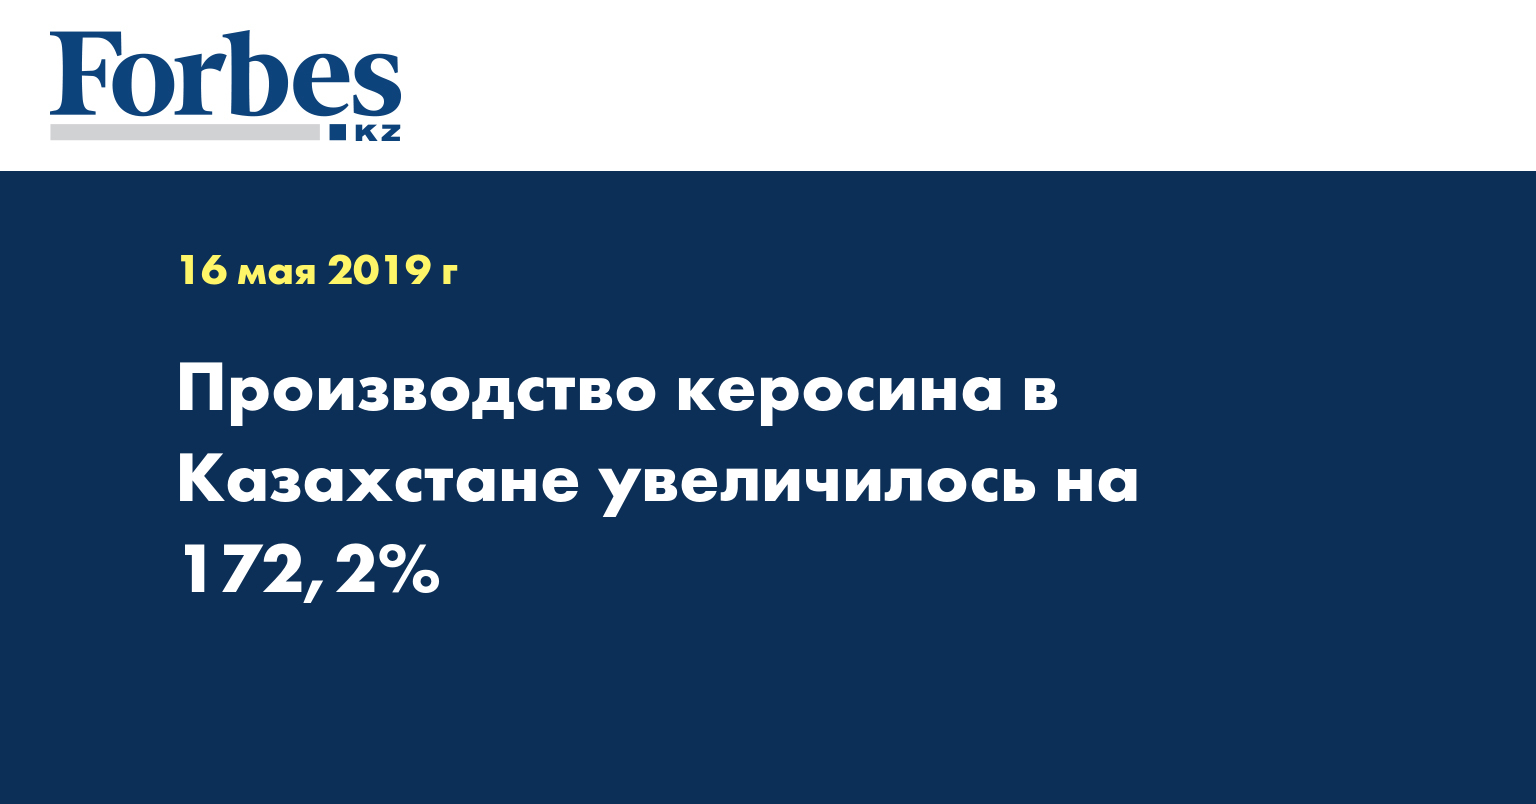 Производство керосина в Казахстане увеличилось на 172,2%